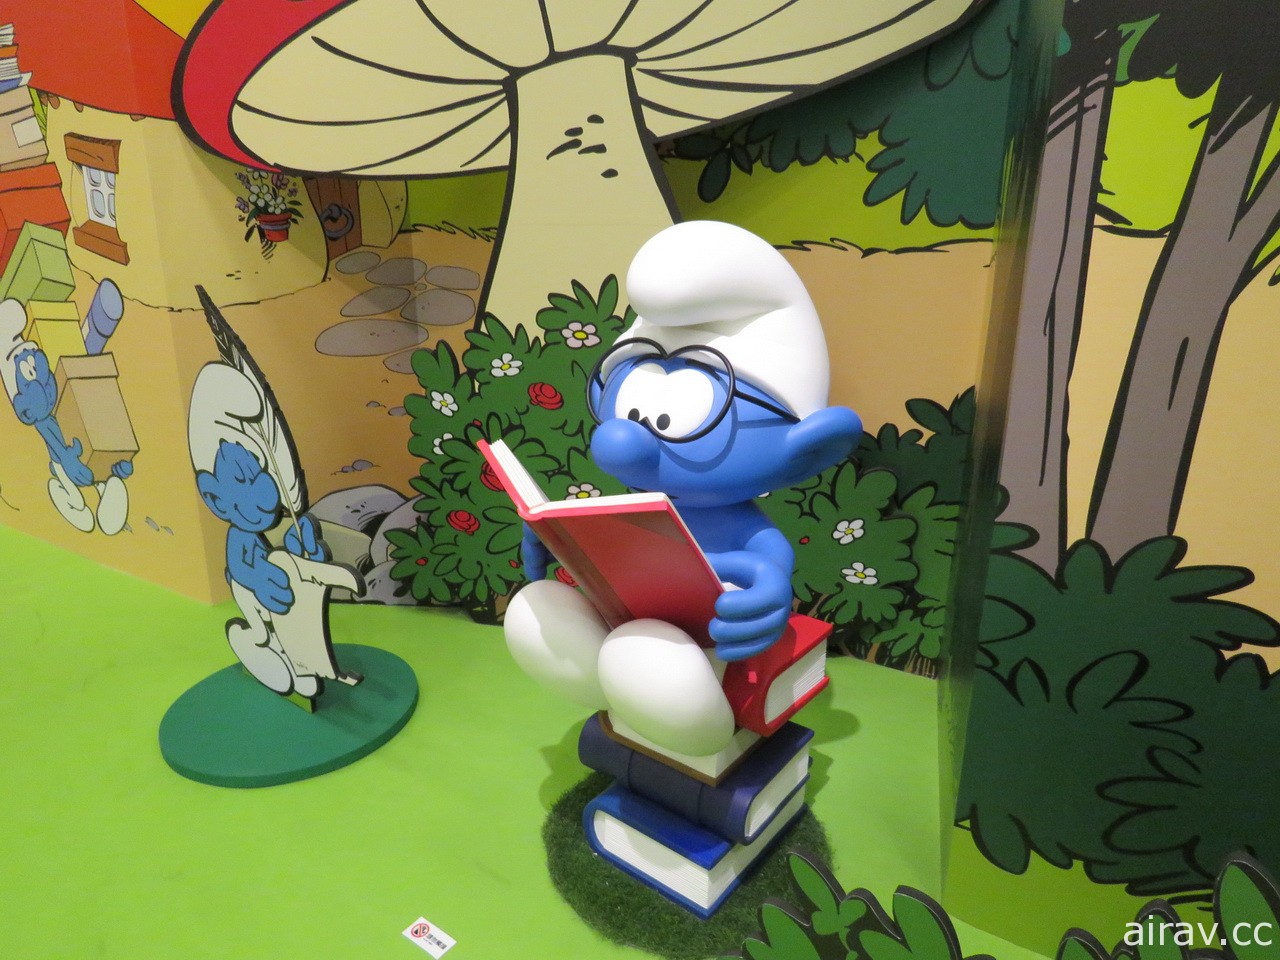 「藍色小精靈 愛在 17 特展」明日正式揭幕 記者會搶先一覽蘑菇村可愛風貌